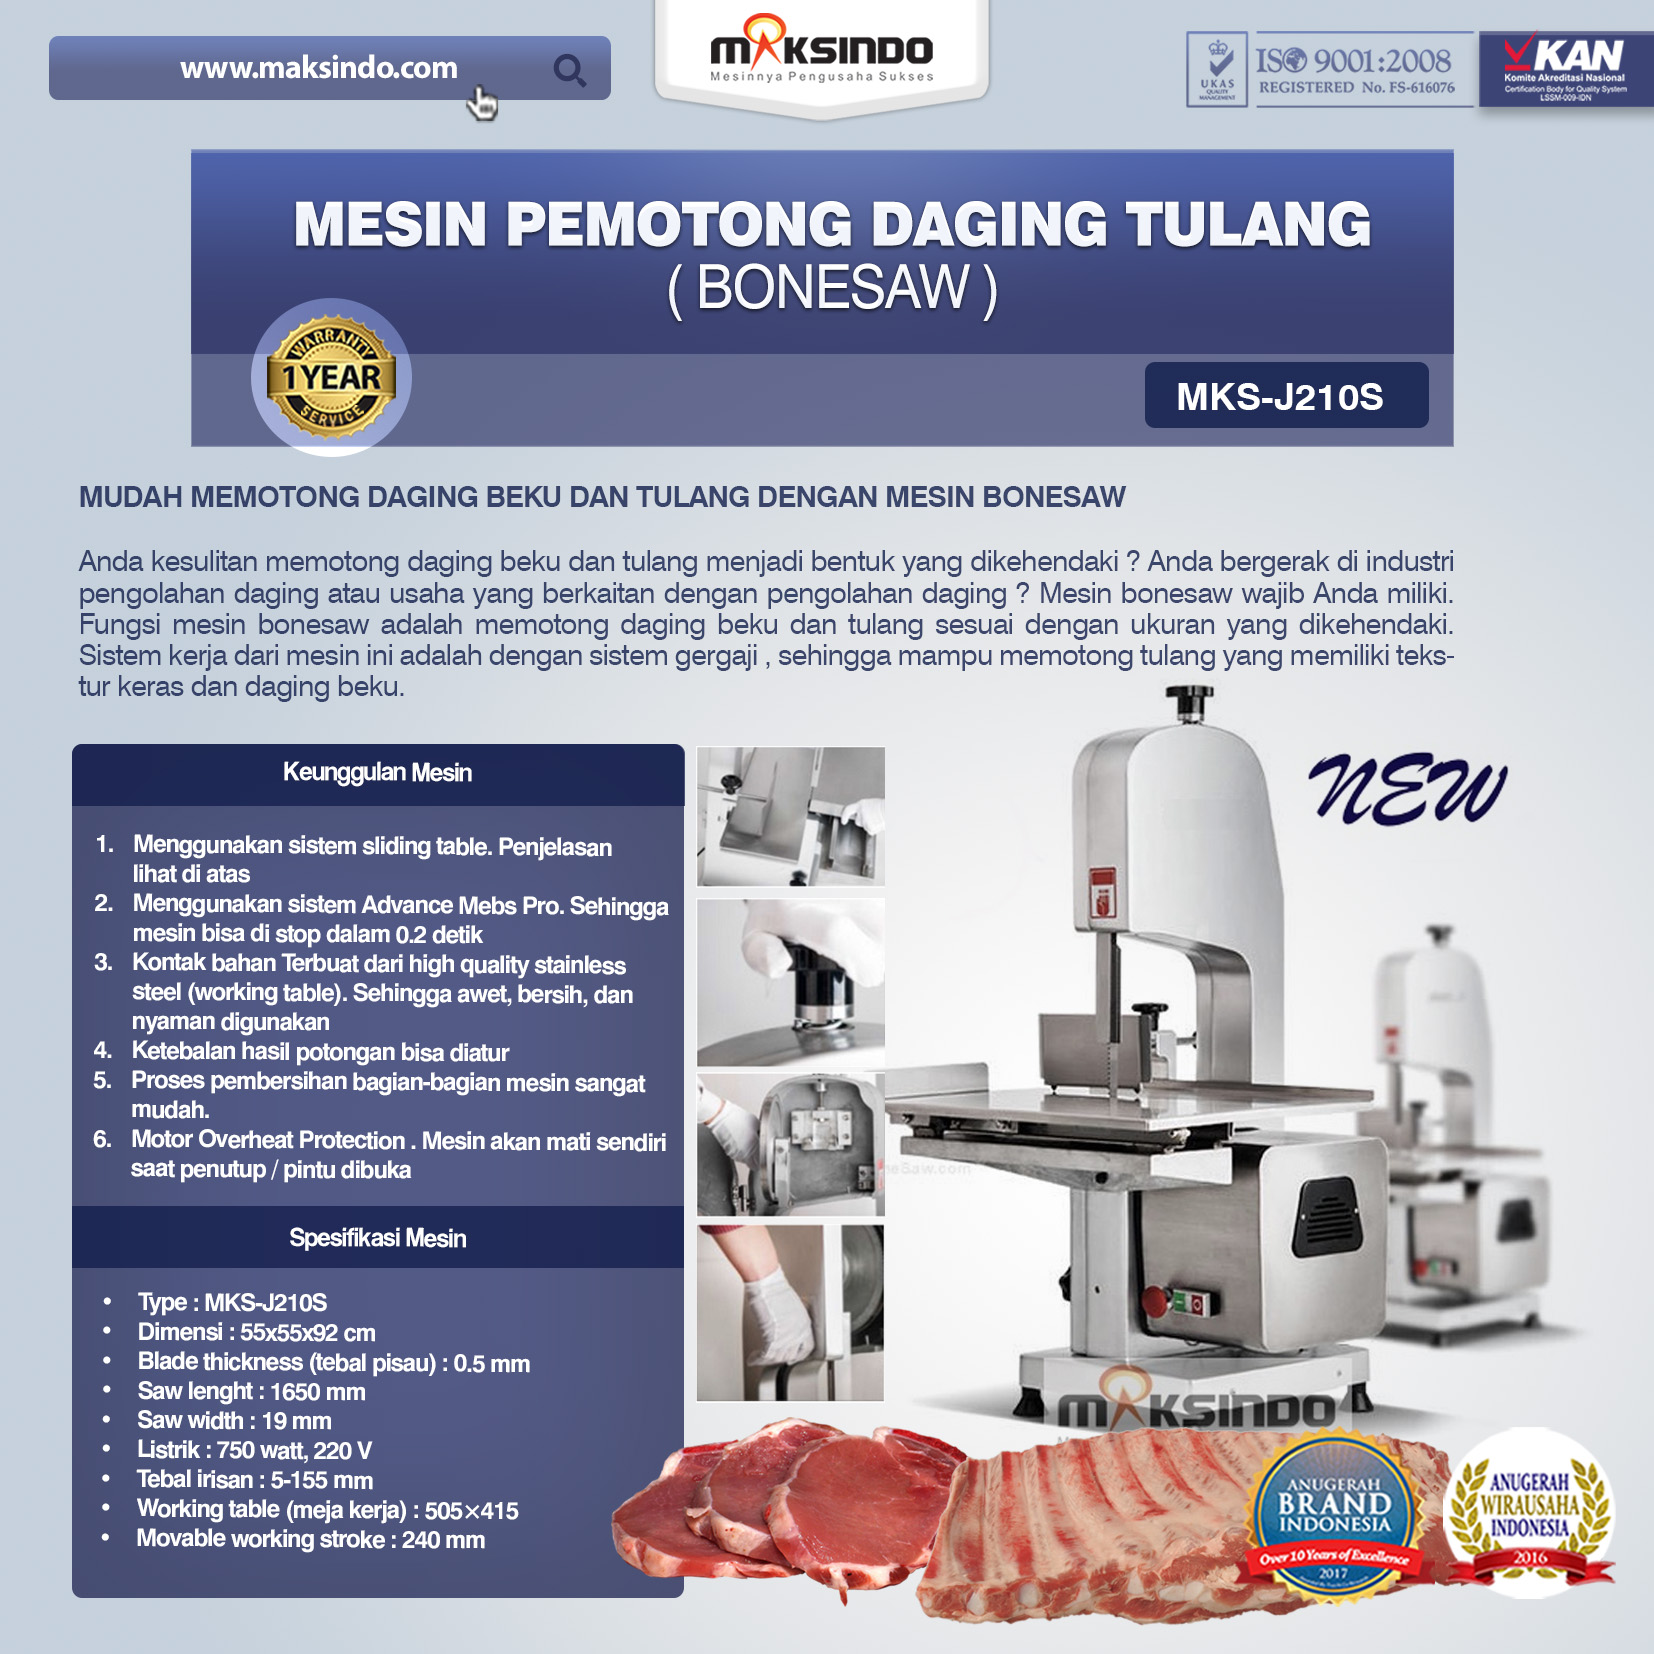 Jual Mesin Bonesaw Pemotong Daging Tulang (MKS-J210S) di Semarang